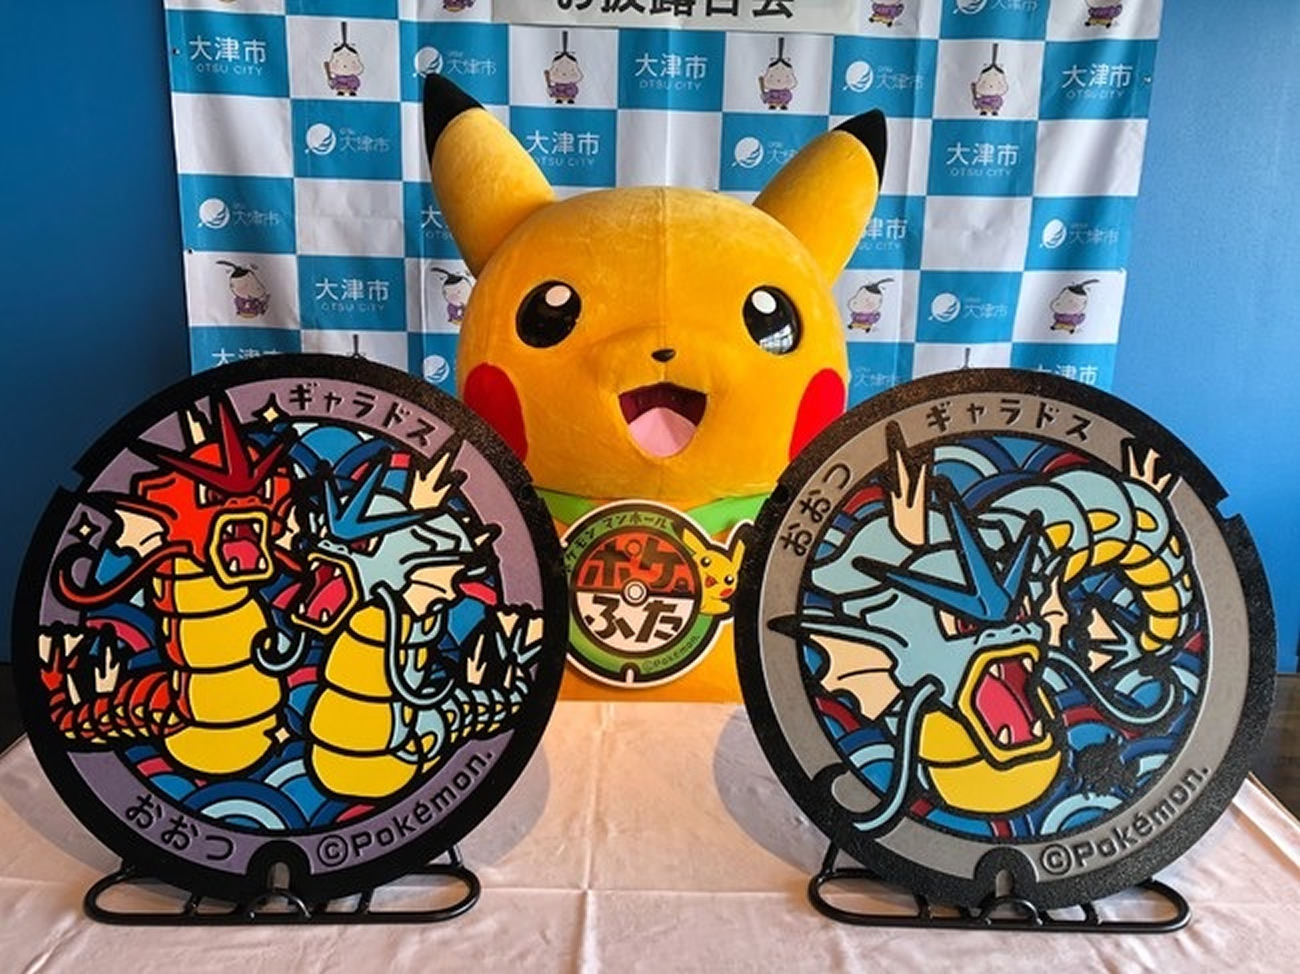 Região central do Japão, Kinki, recebe suas primeiras tampas de bueiro Pokémon